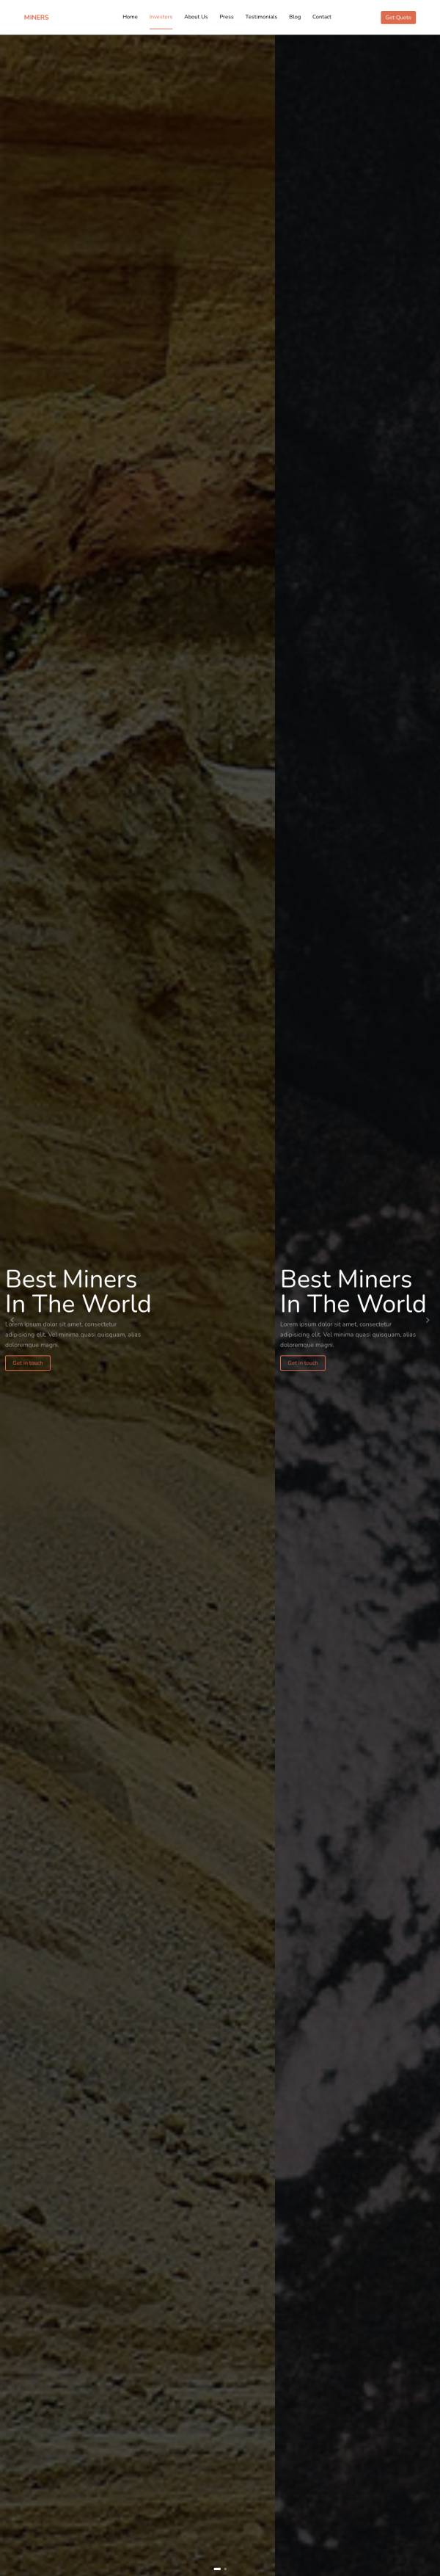 矿业公司网站模板，html矿业网站模板源代码